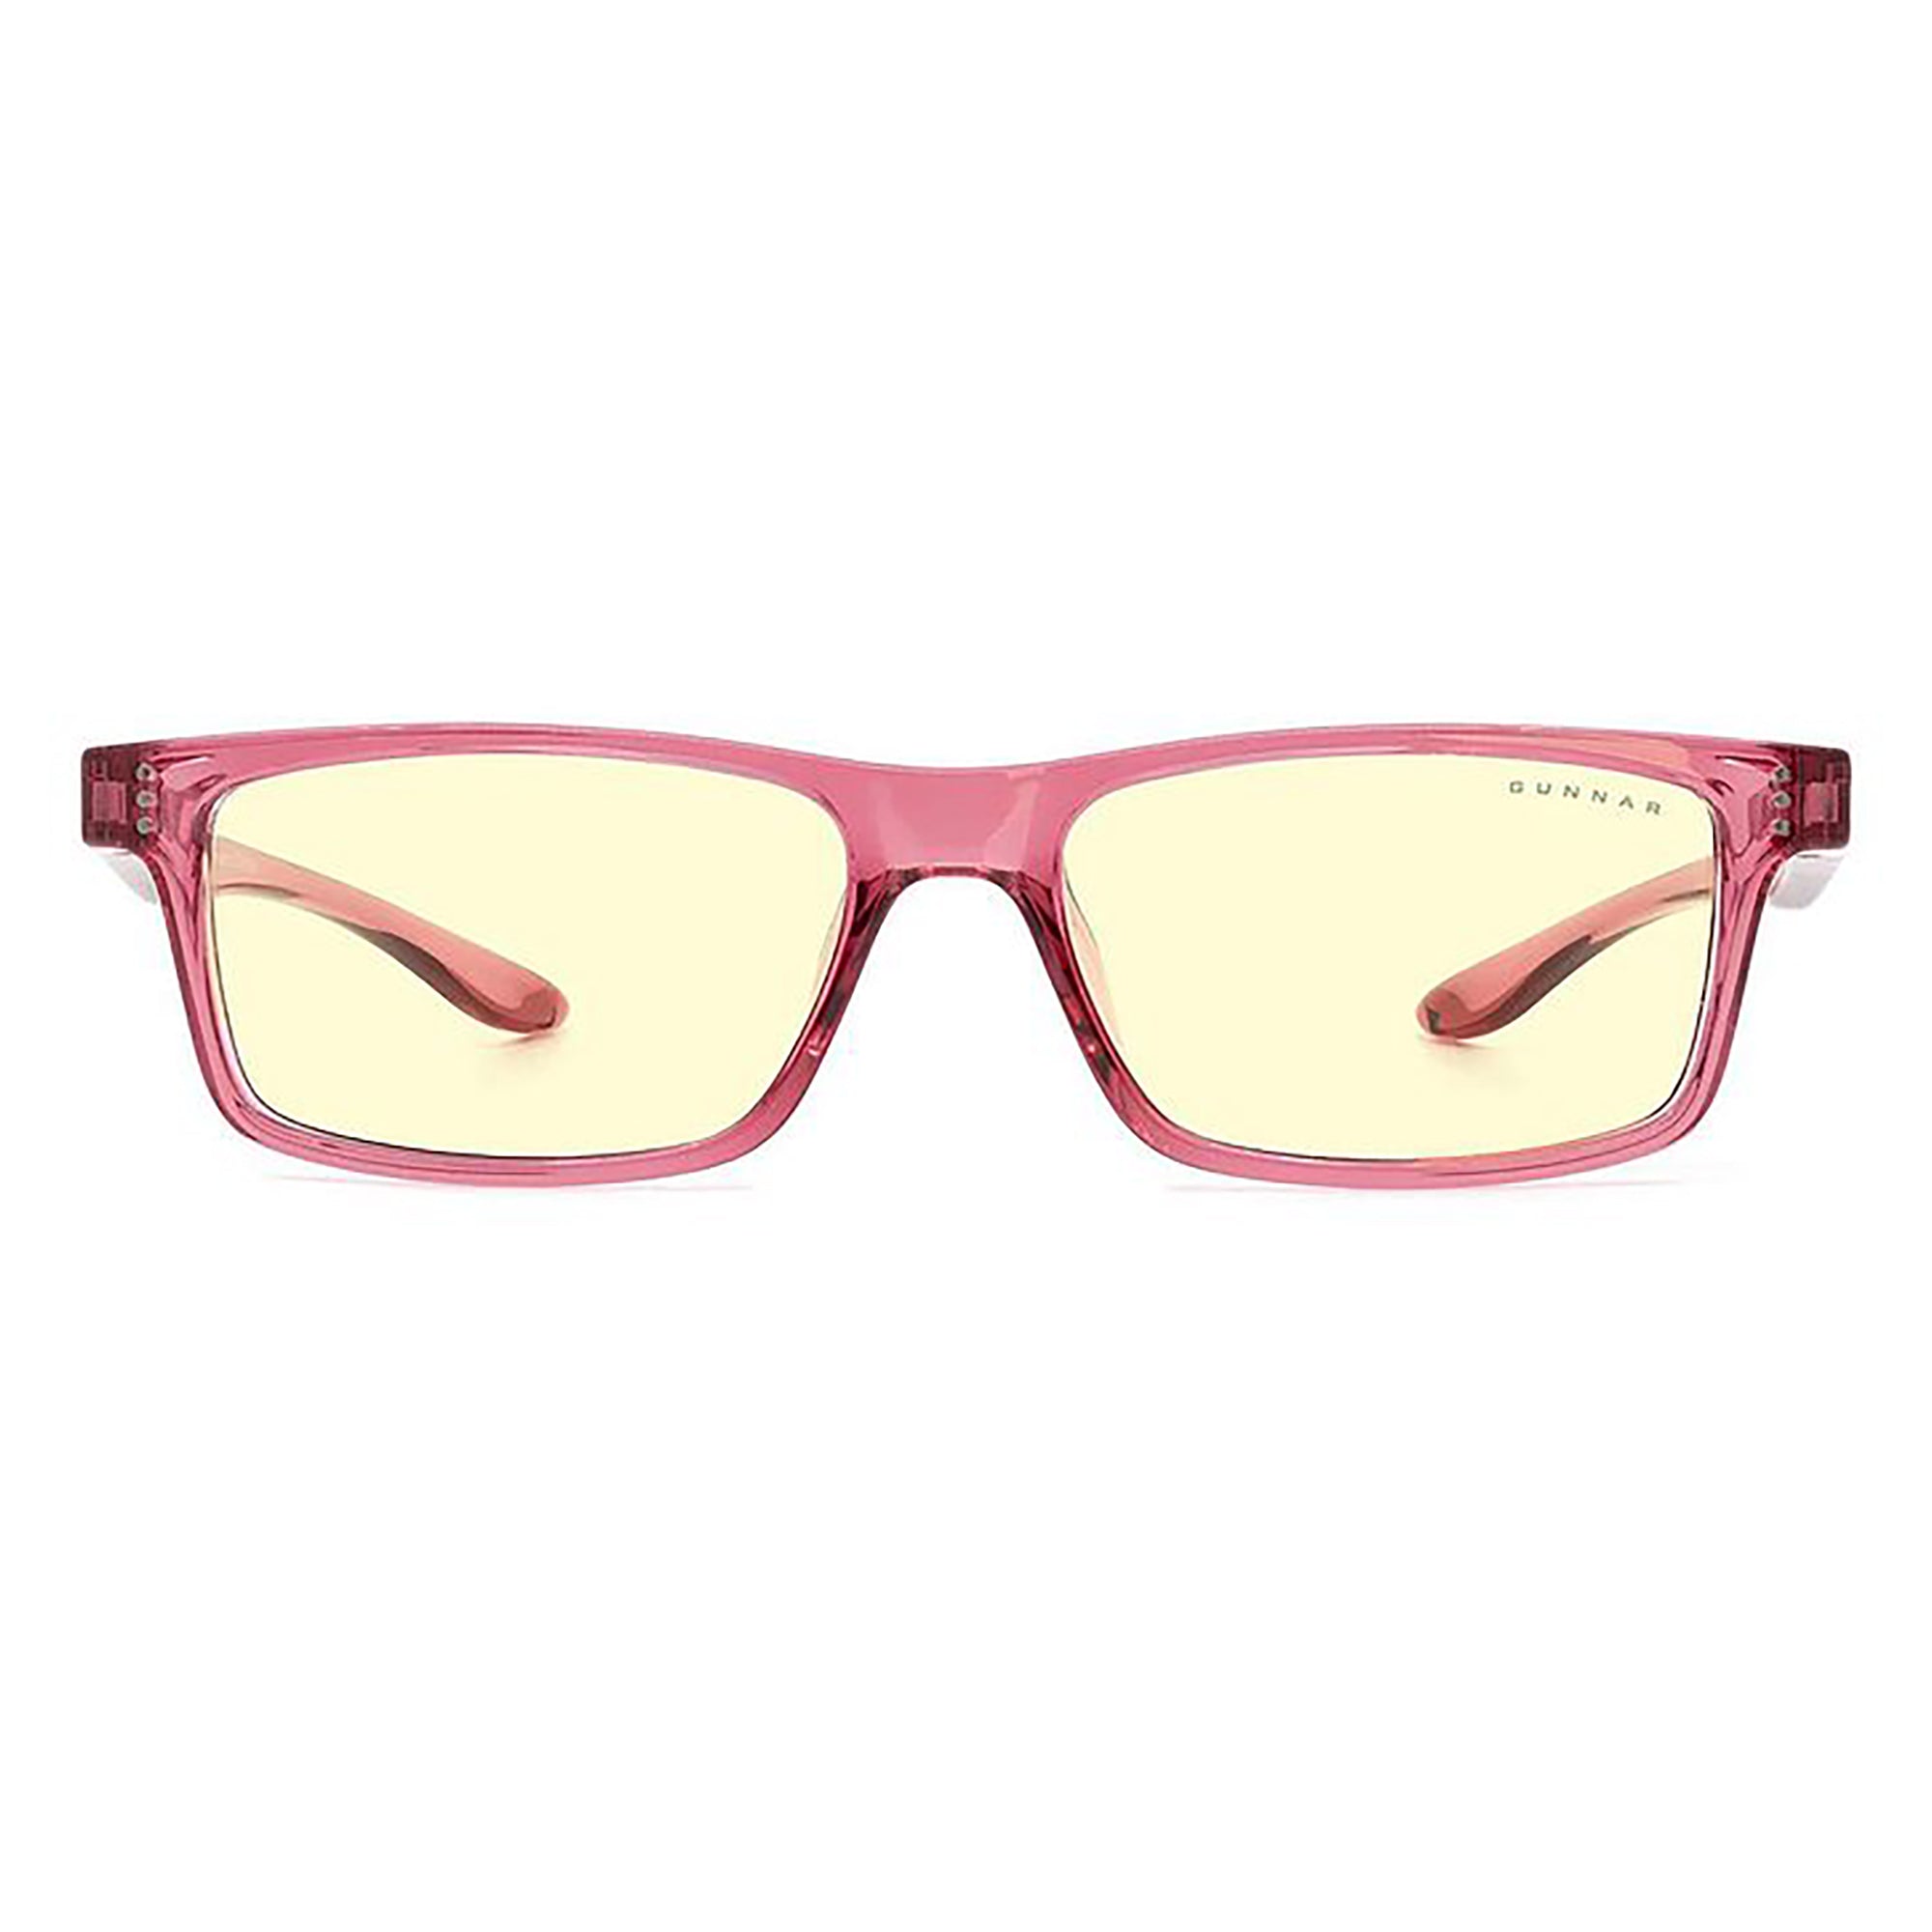 Gunnar Cruz Kids Indoor Digital Eyewear/Glasses, Pink (8-12 years)